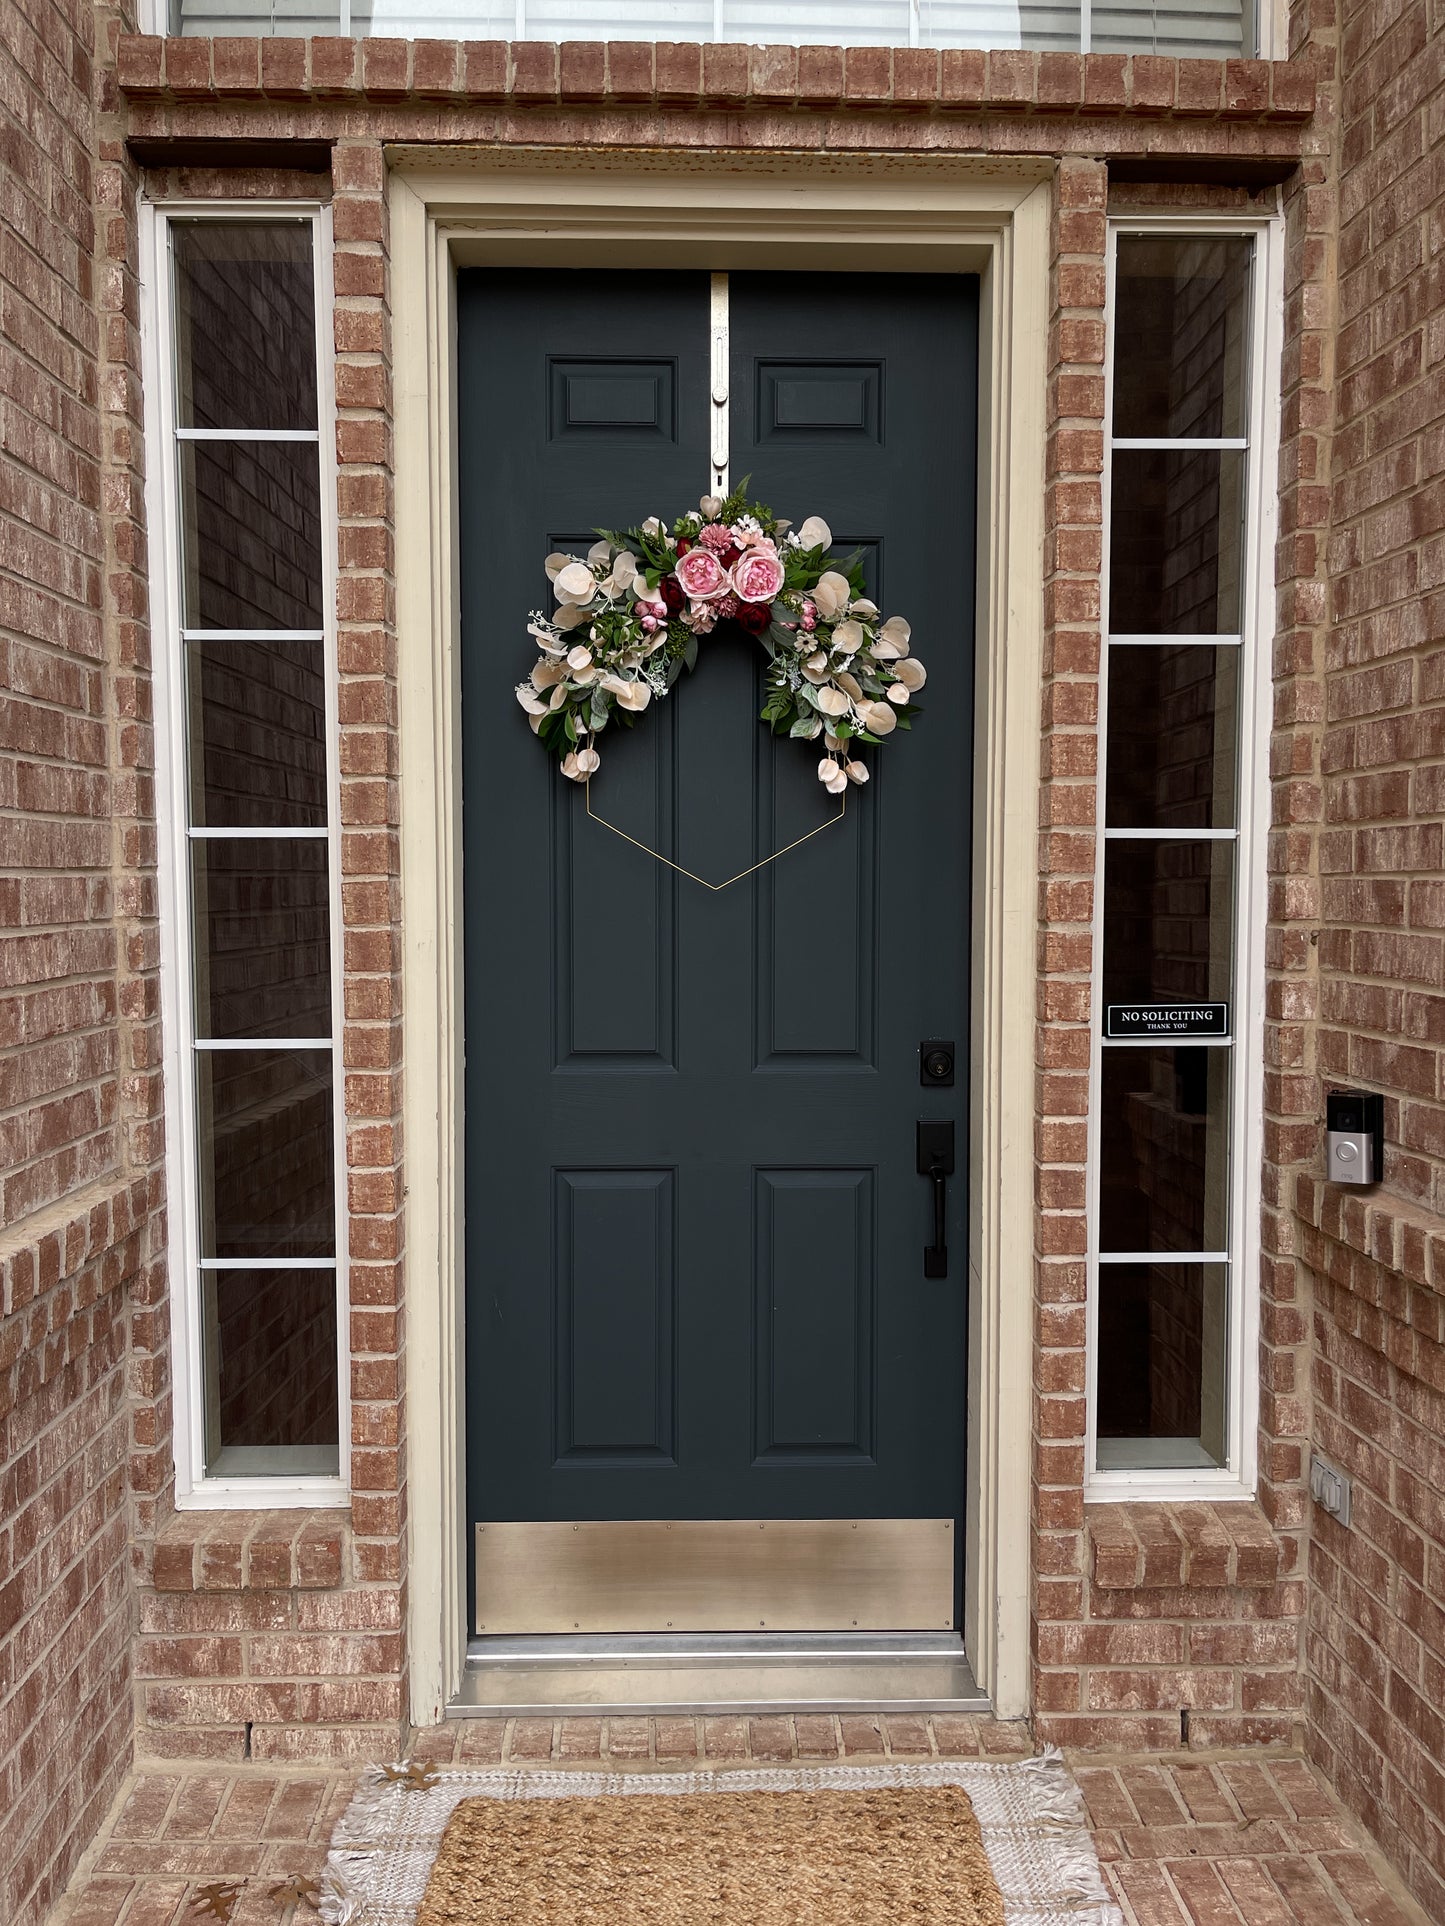 Modern Spring Hexagon Wreath | Pink Rose and Peony Front Door Decor | Easter Door Hanger